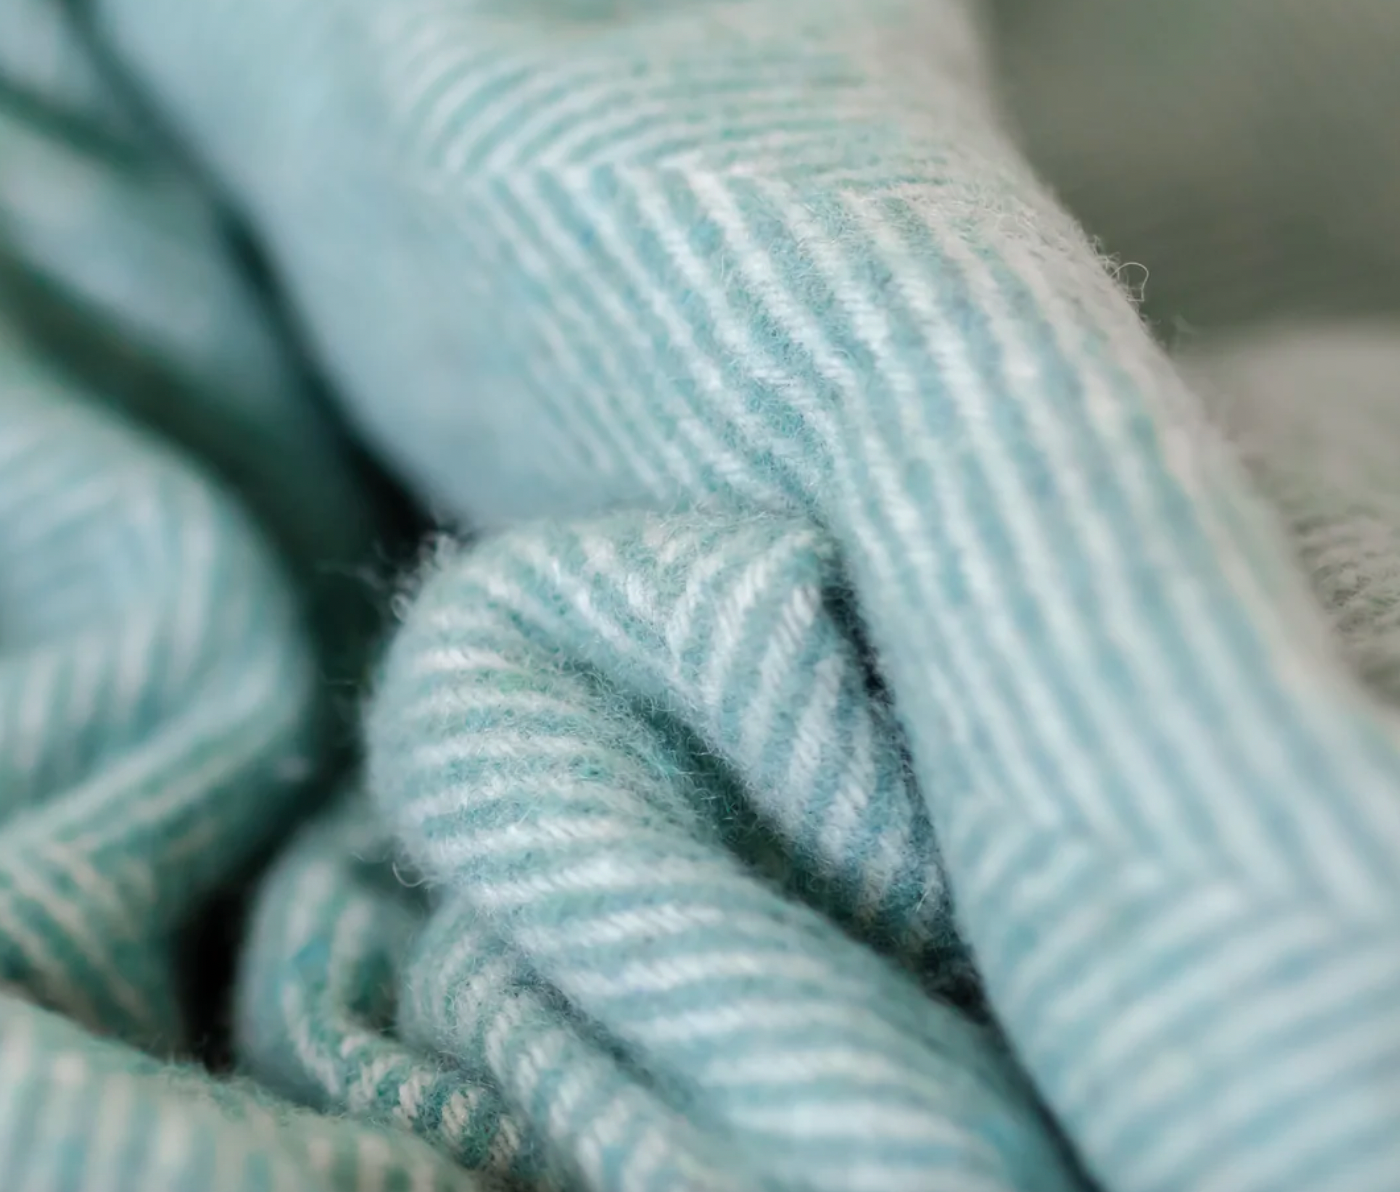 Recycled Wool Blanket in Pistachio Herringbone